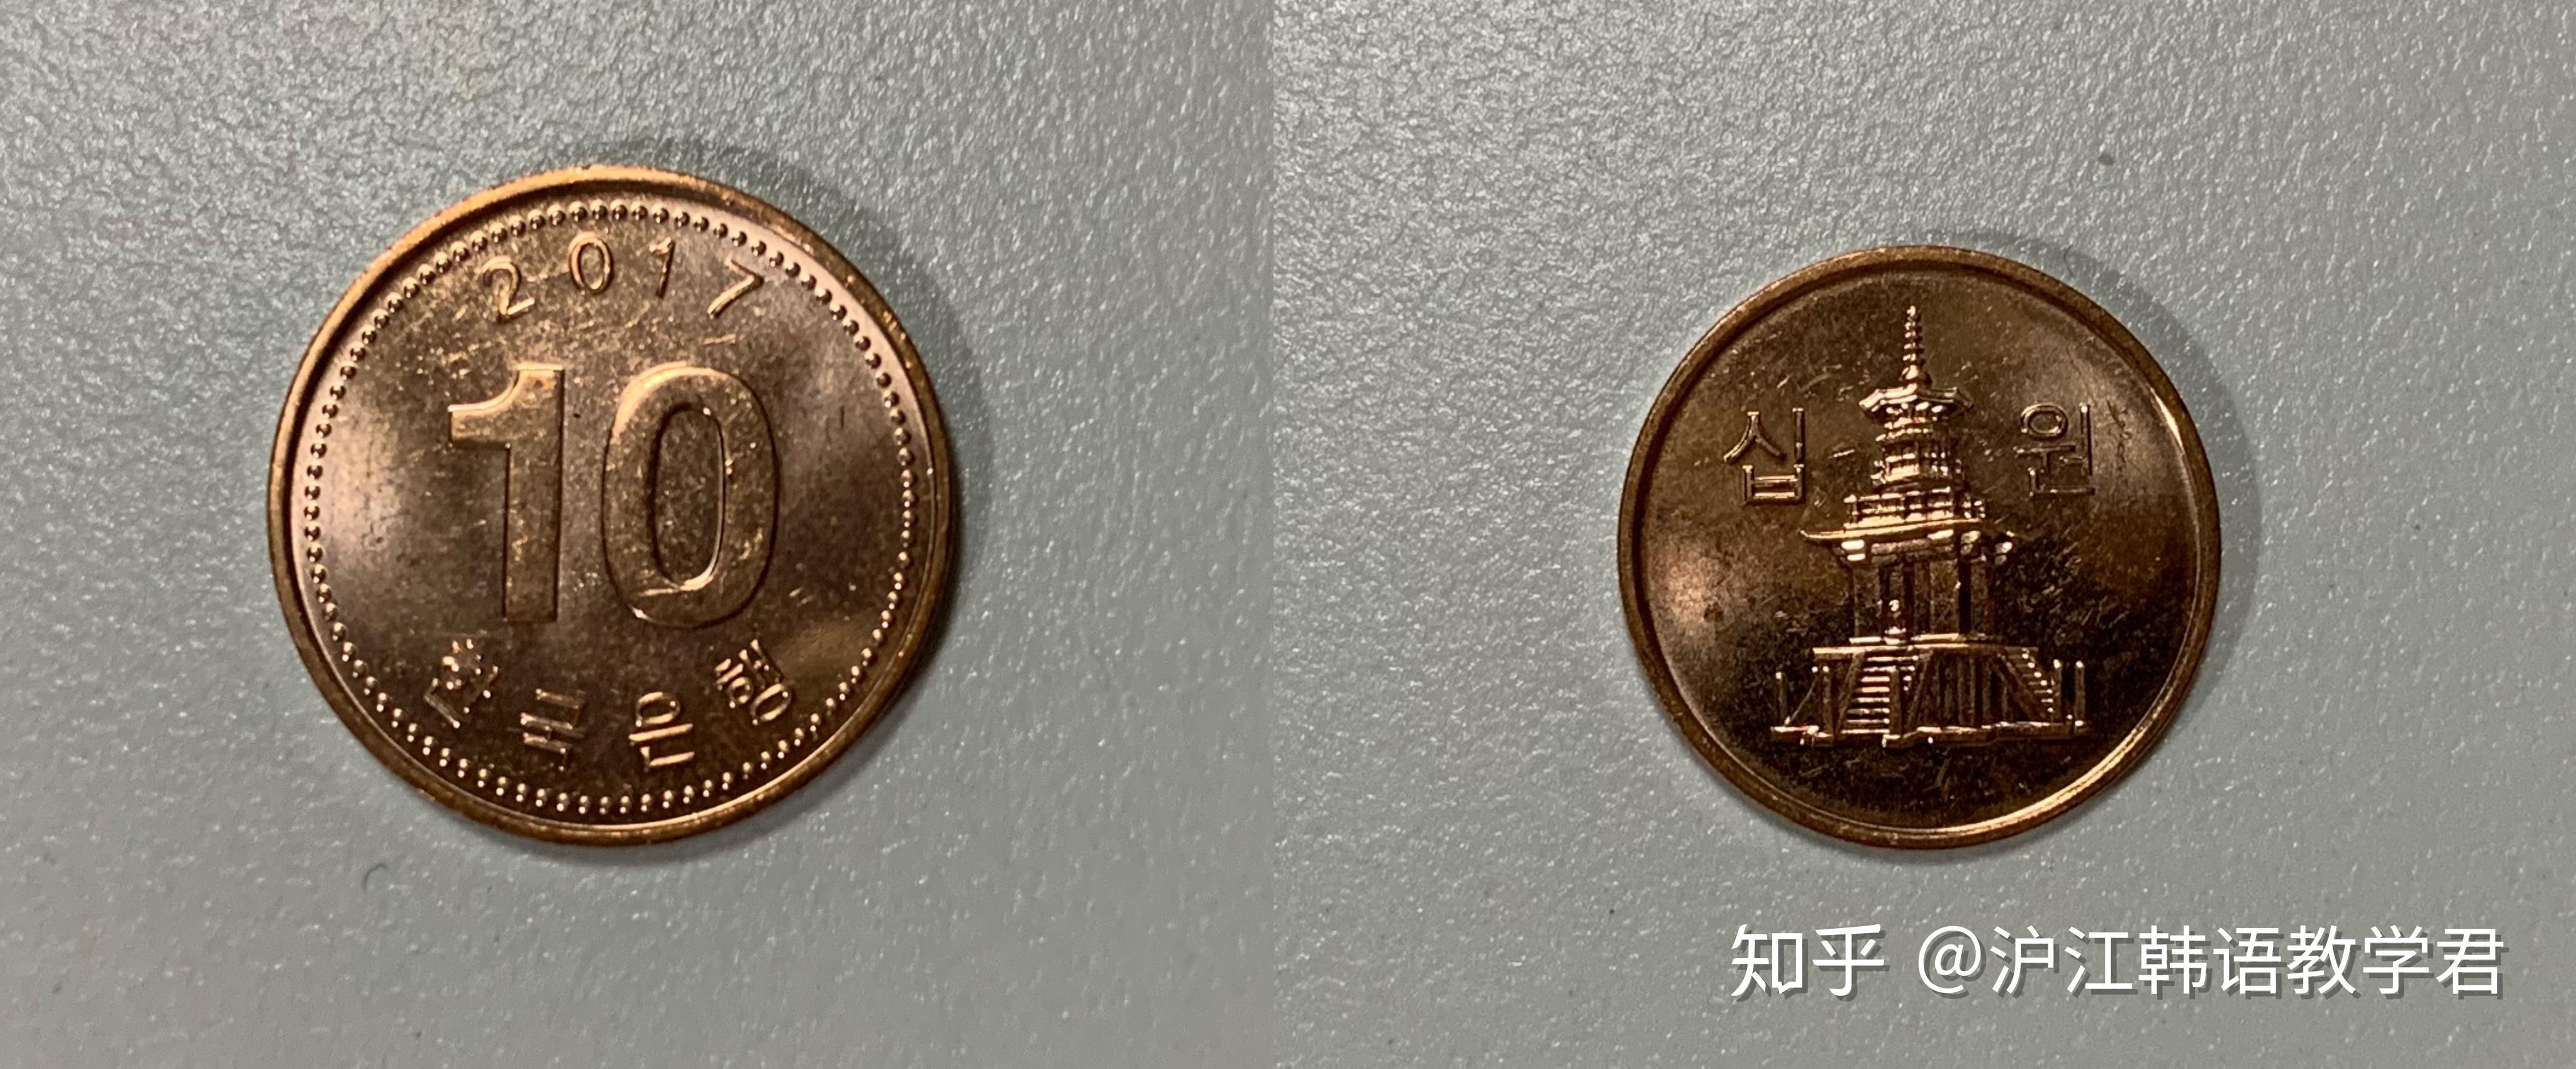 韩币100元2008年韩国硬币-价格:1元-se83523243-外国钱币-零售-7788收藏__收藏热线